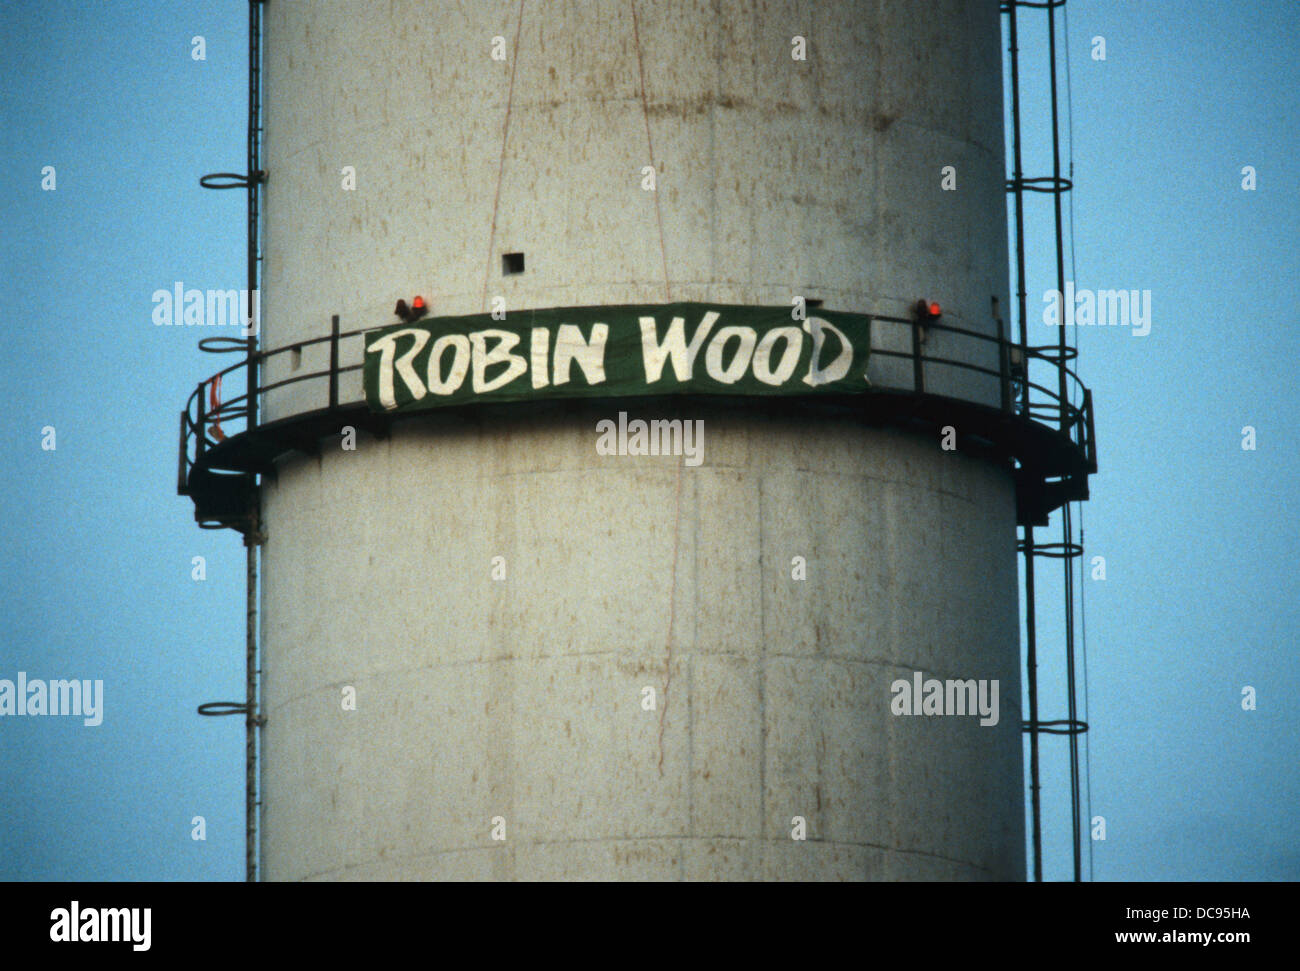 Umwelt-Protektoren von Robin Wood-Protest gegen die Umweltbelastung am 6. Dezember 1983. Stockfoto